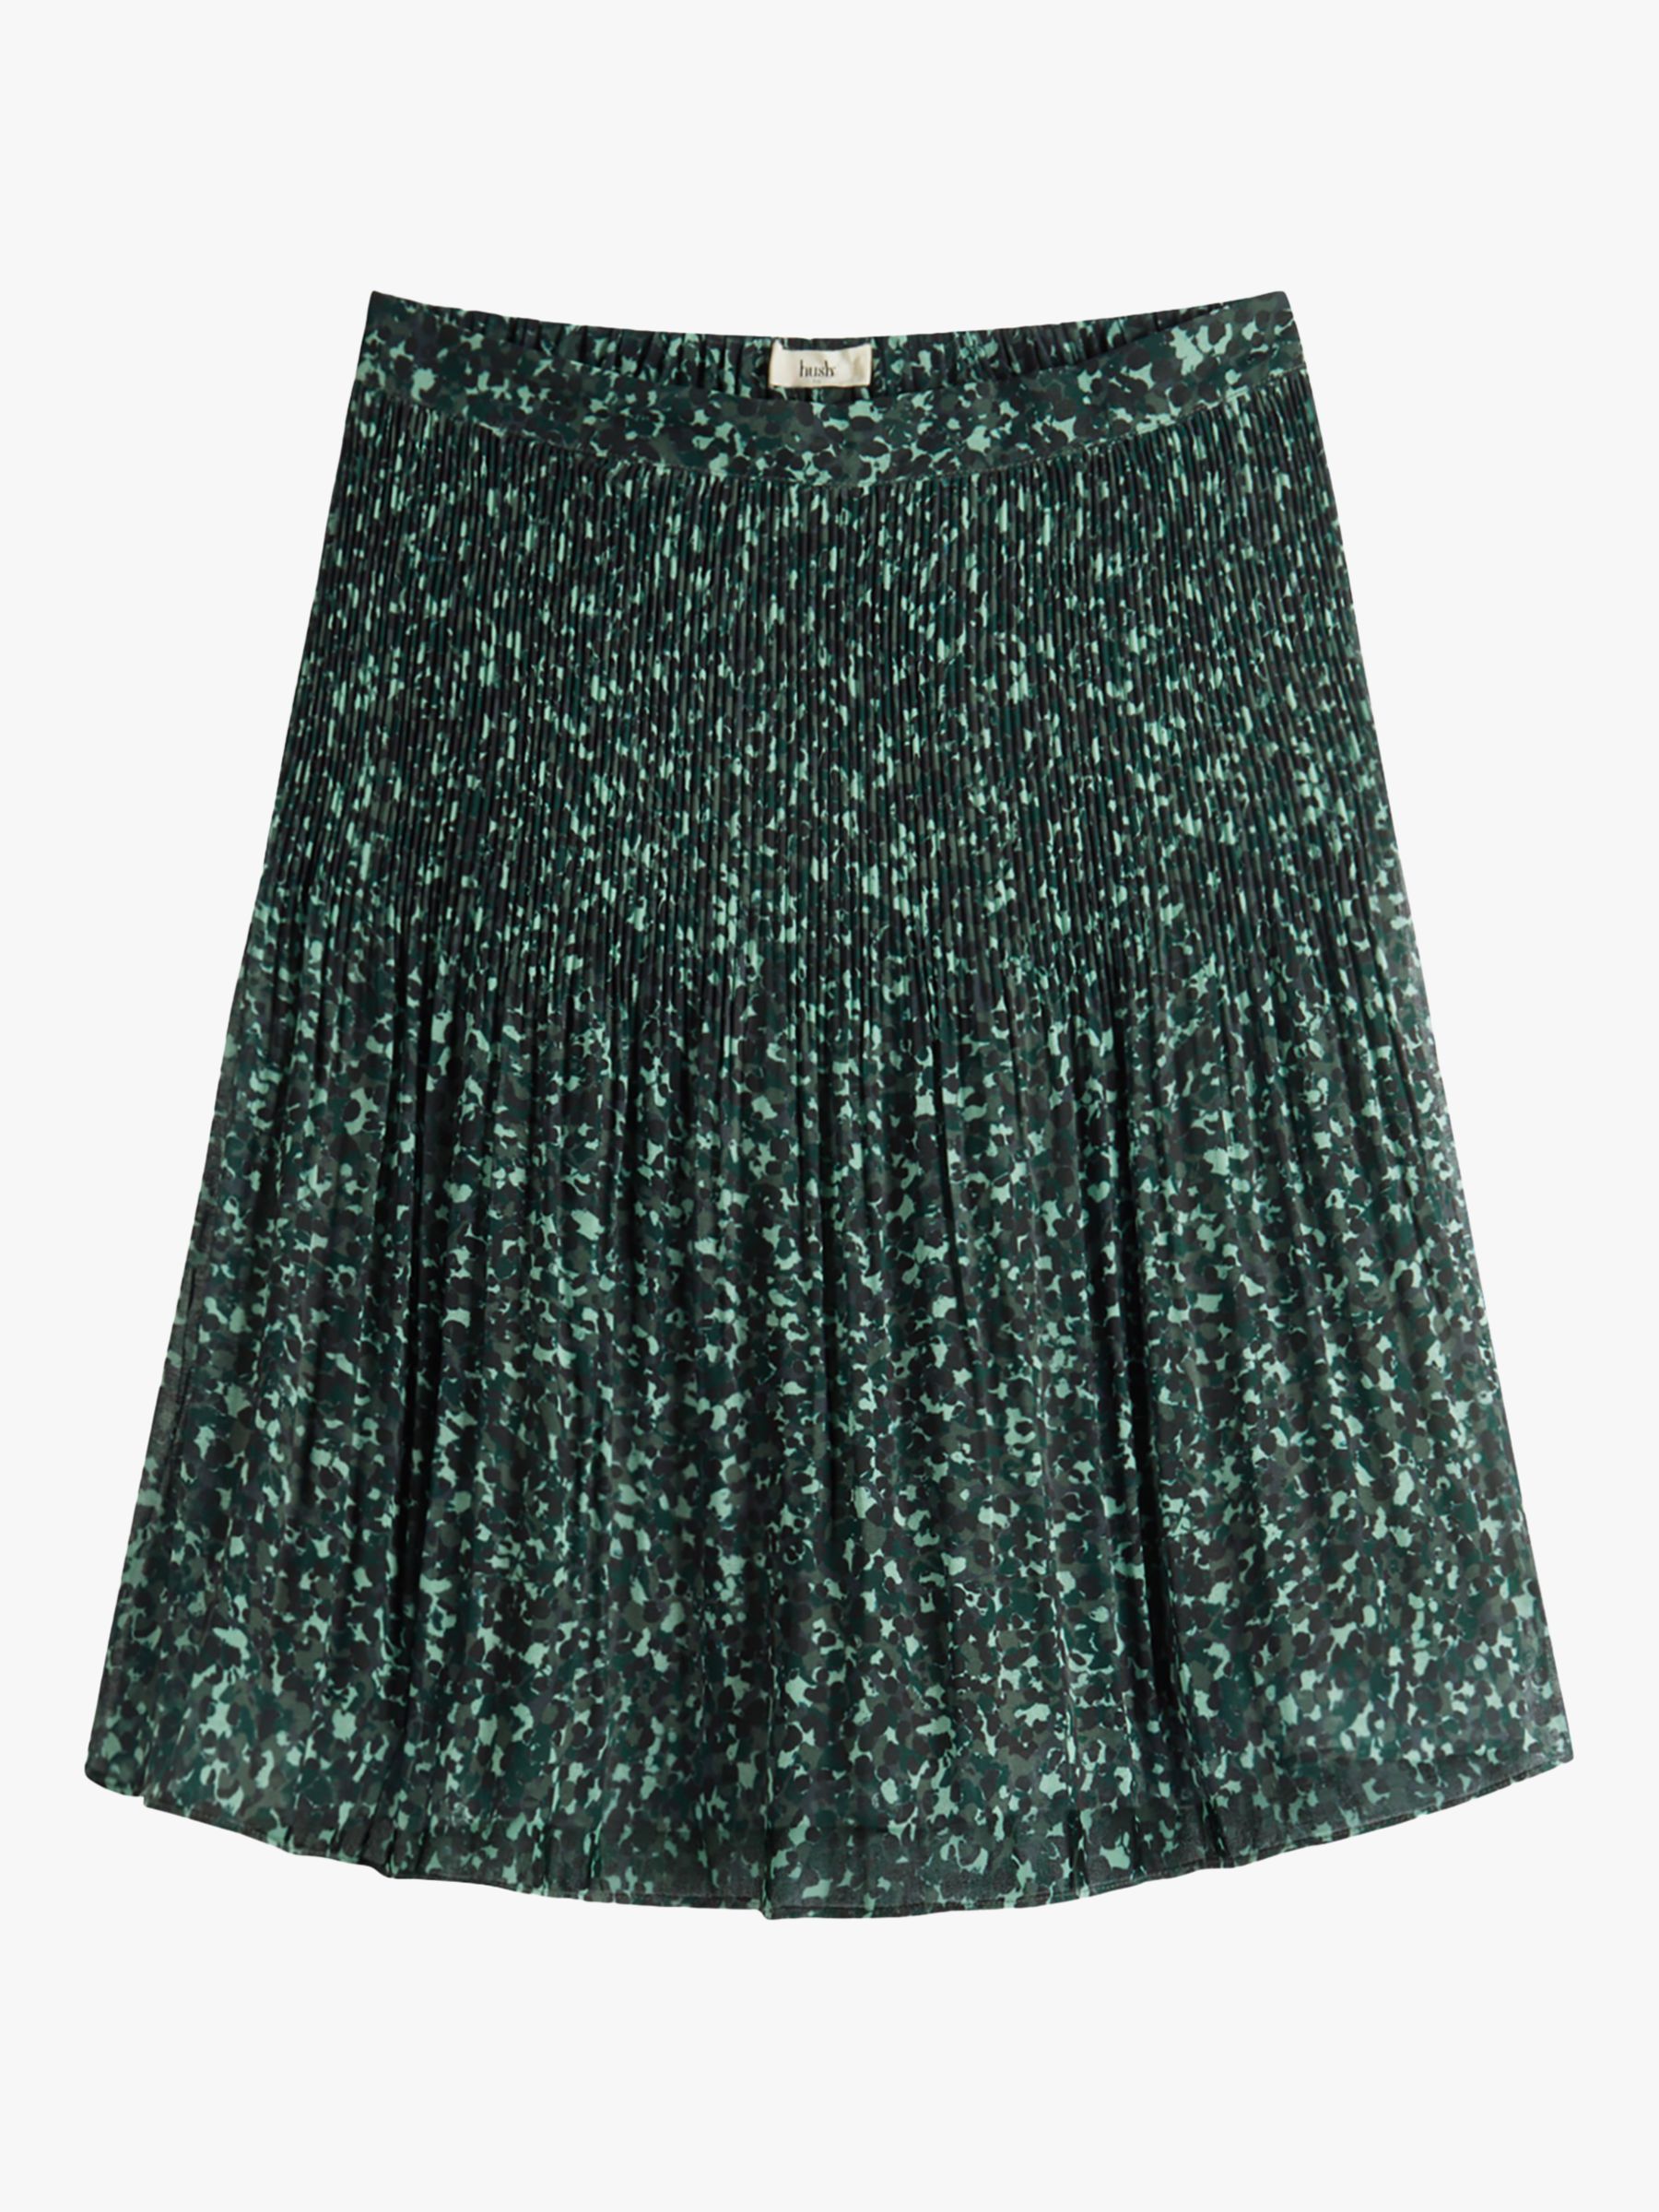 hush Nevah Pleated Mini Skirt, Khaki/Tortoiseshell at John Lewis & Partners